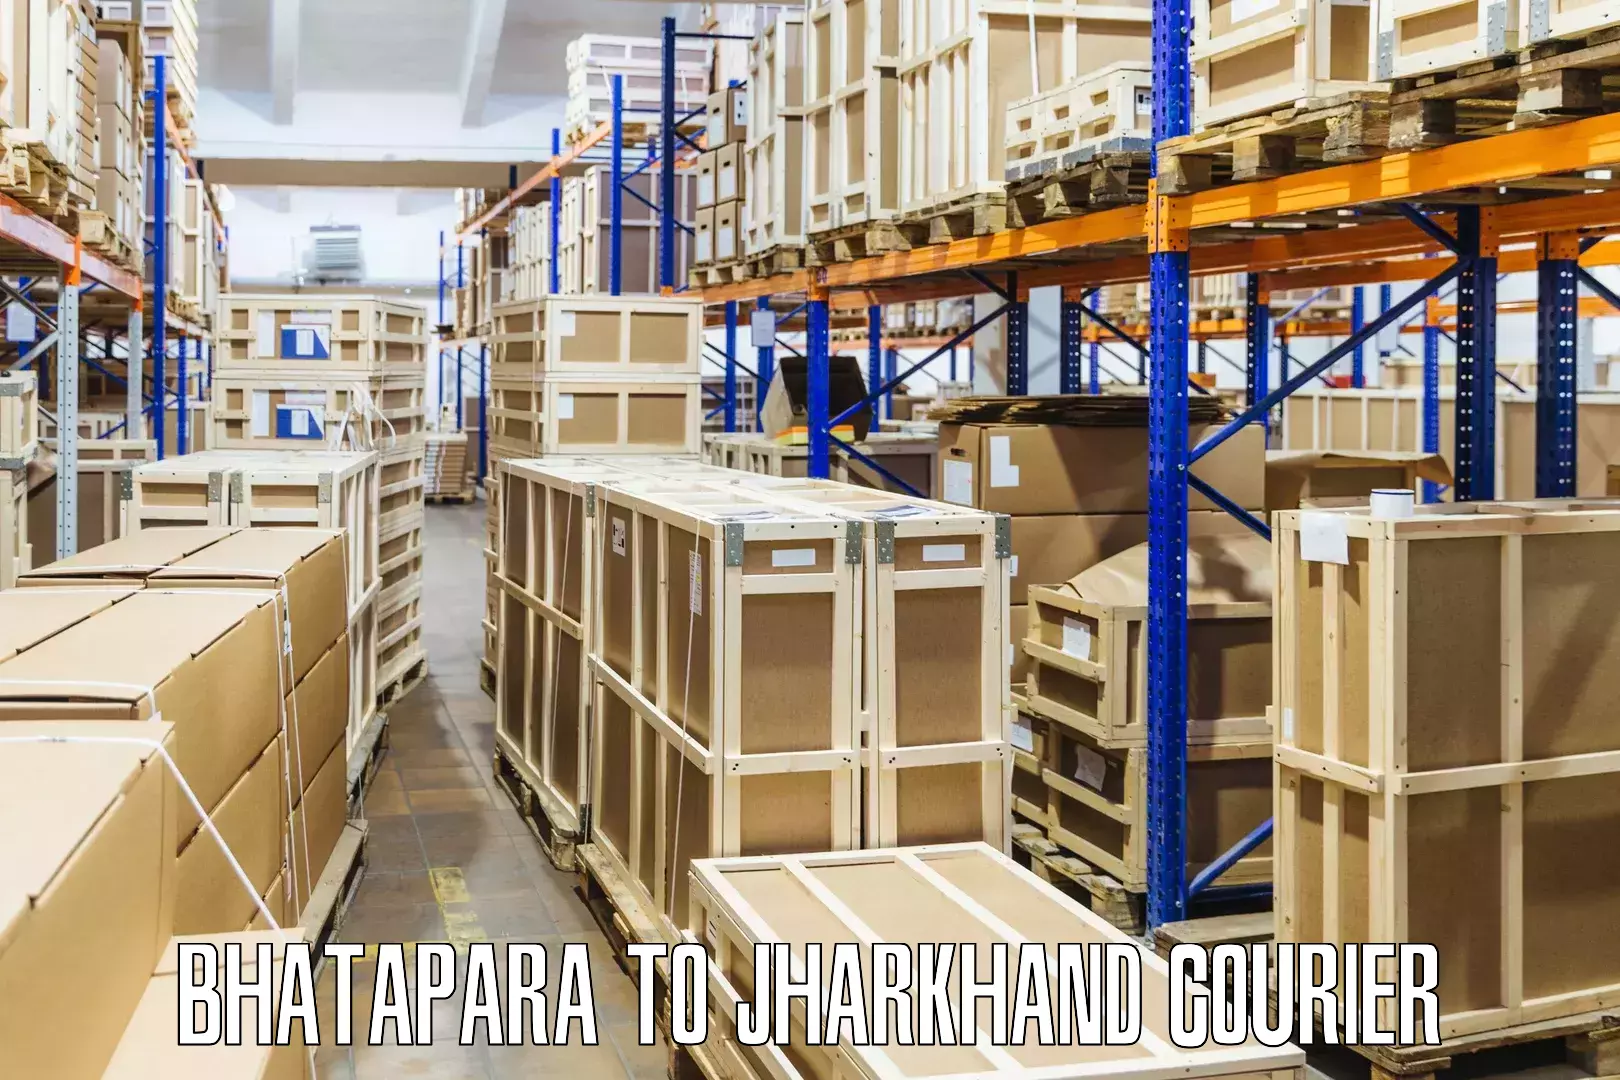 Innovative courier solutions Bhatapara to Palojori